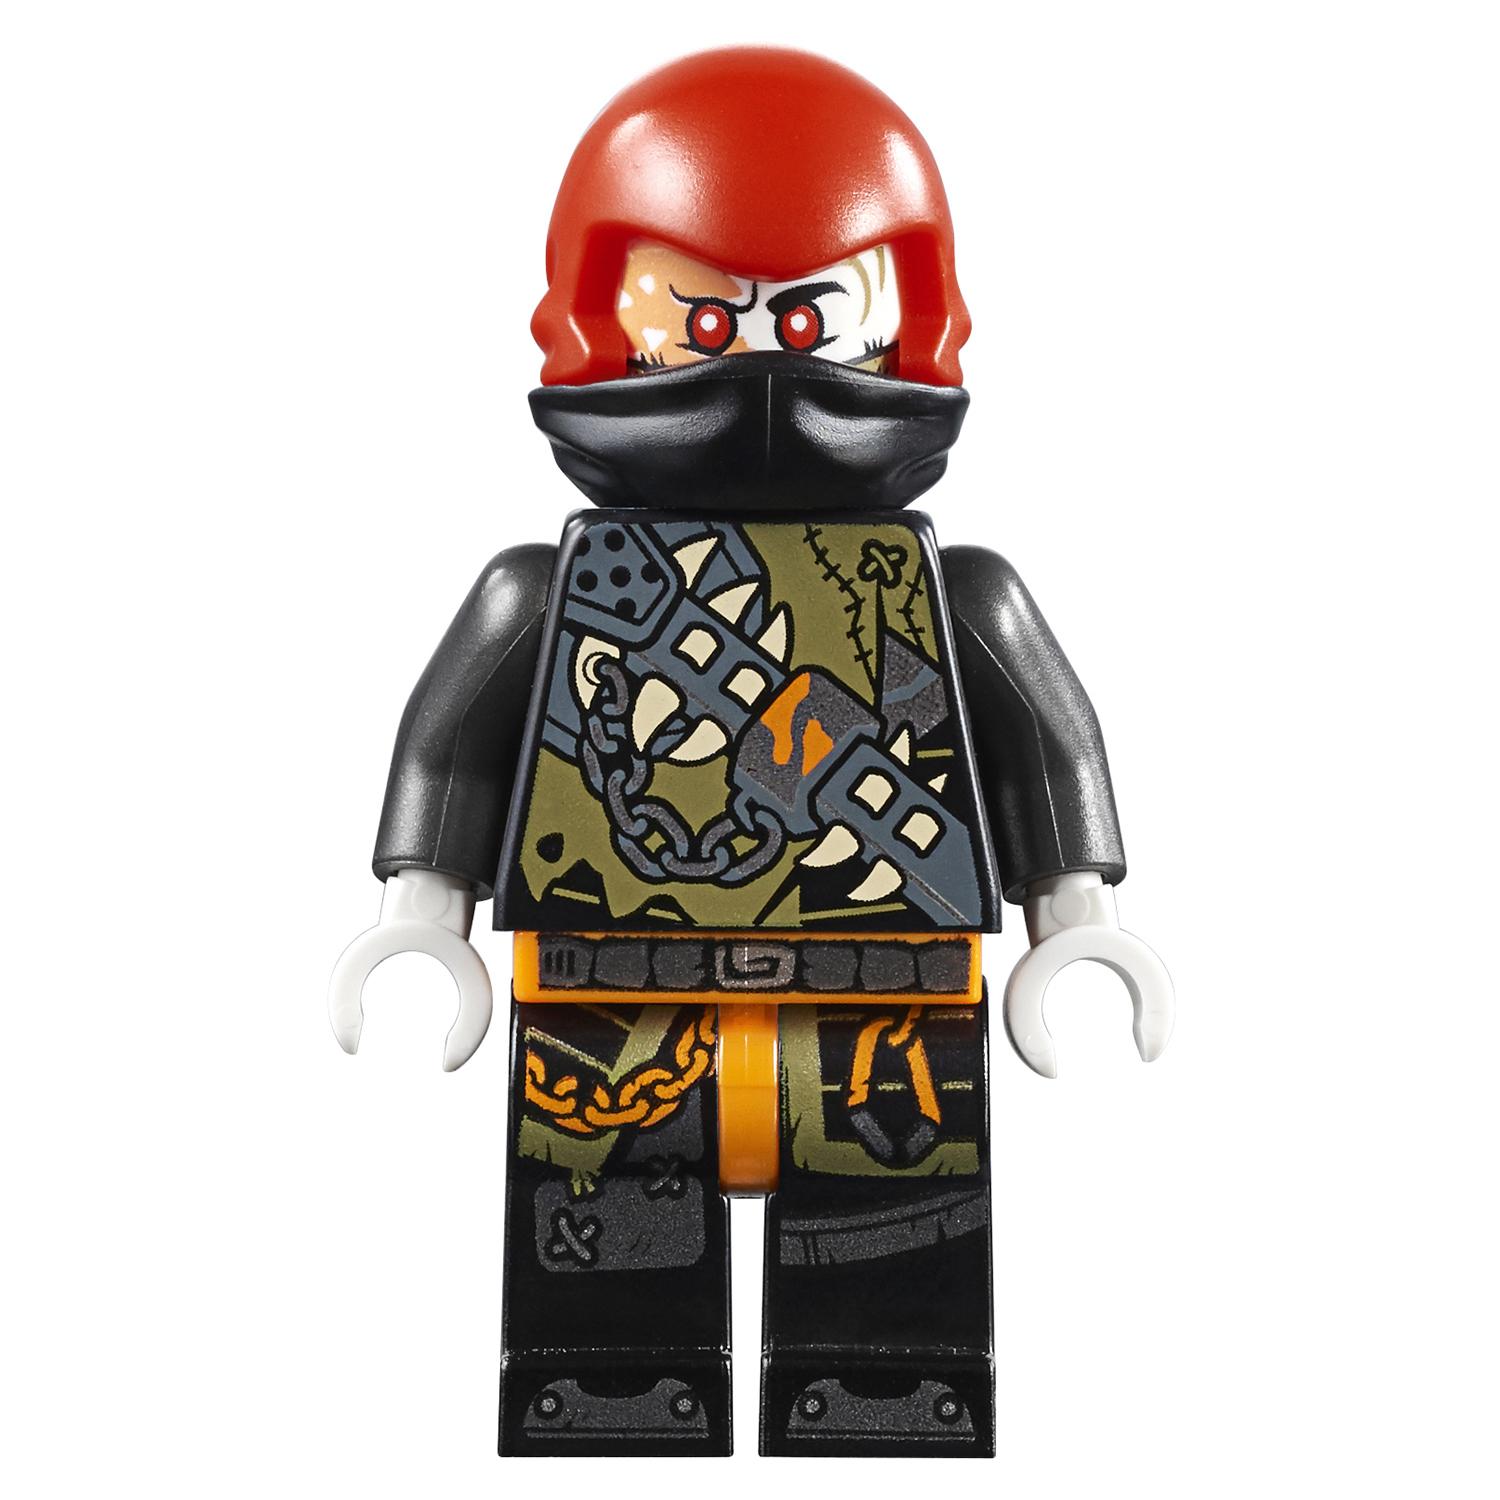 Конструктор LEGO Ninjago - Стремительный странник